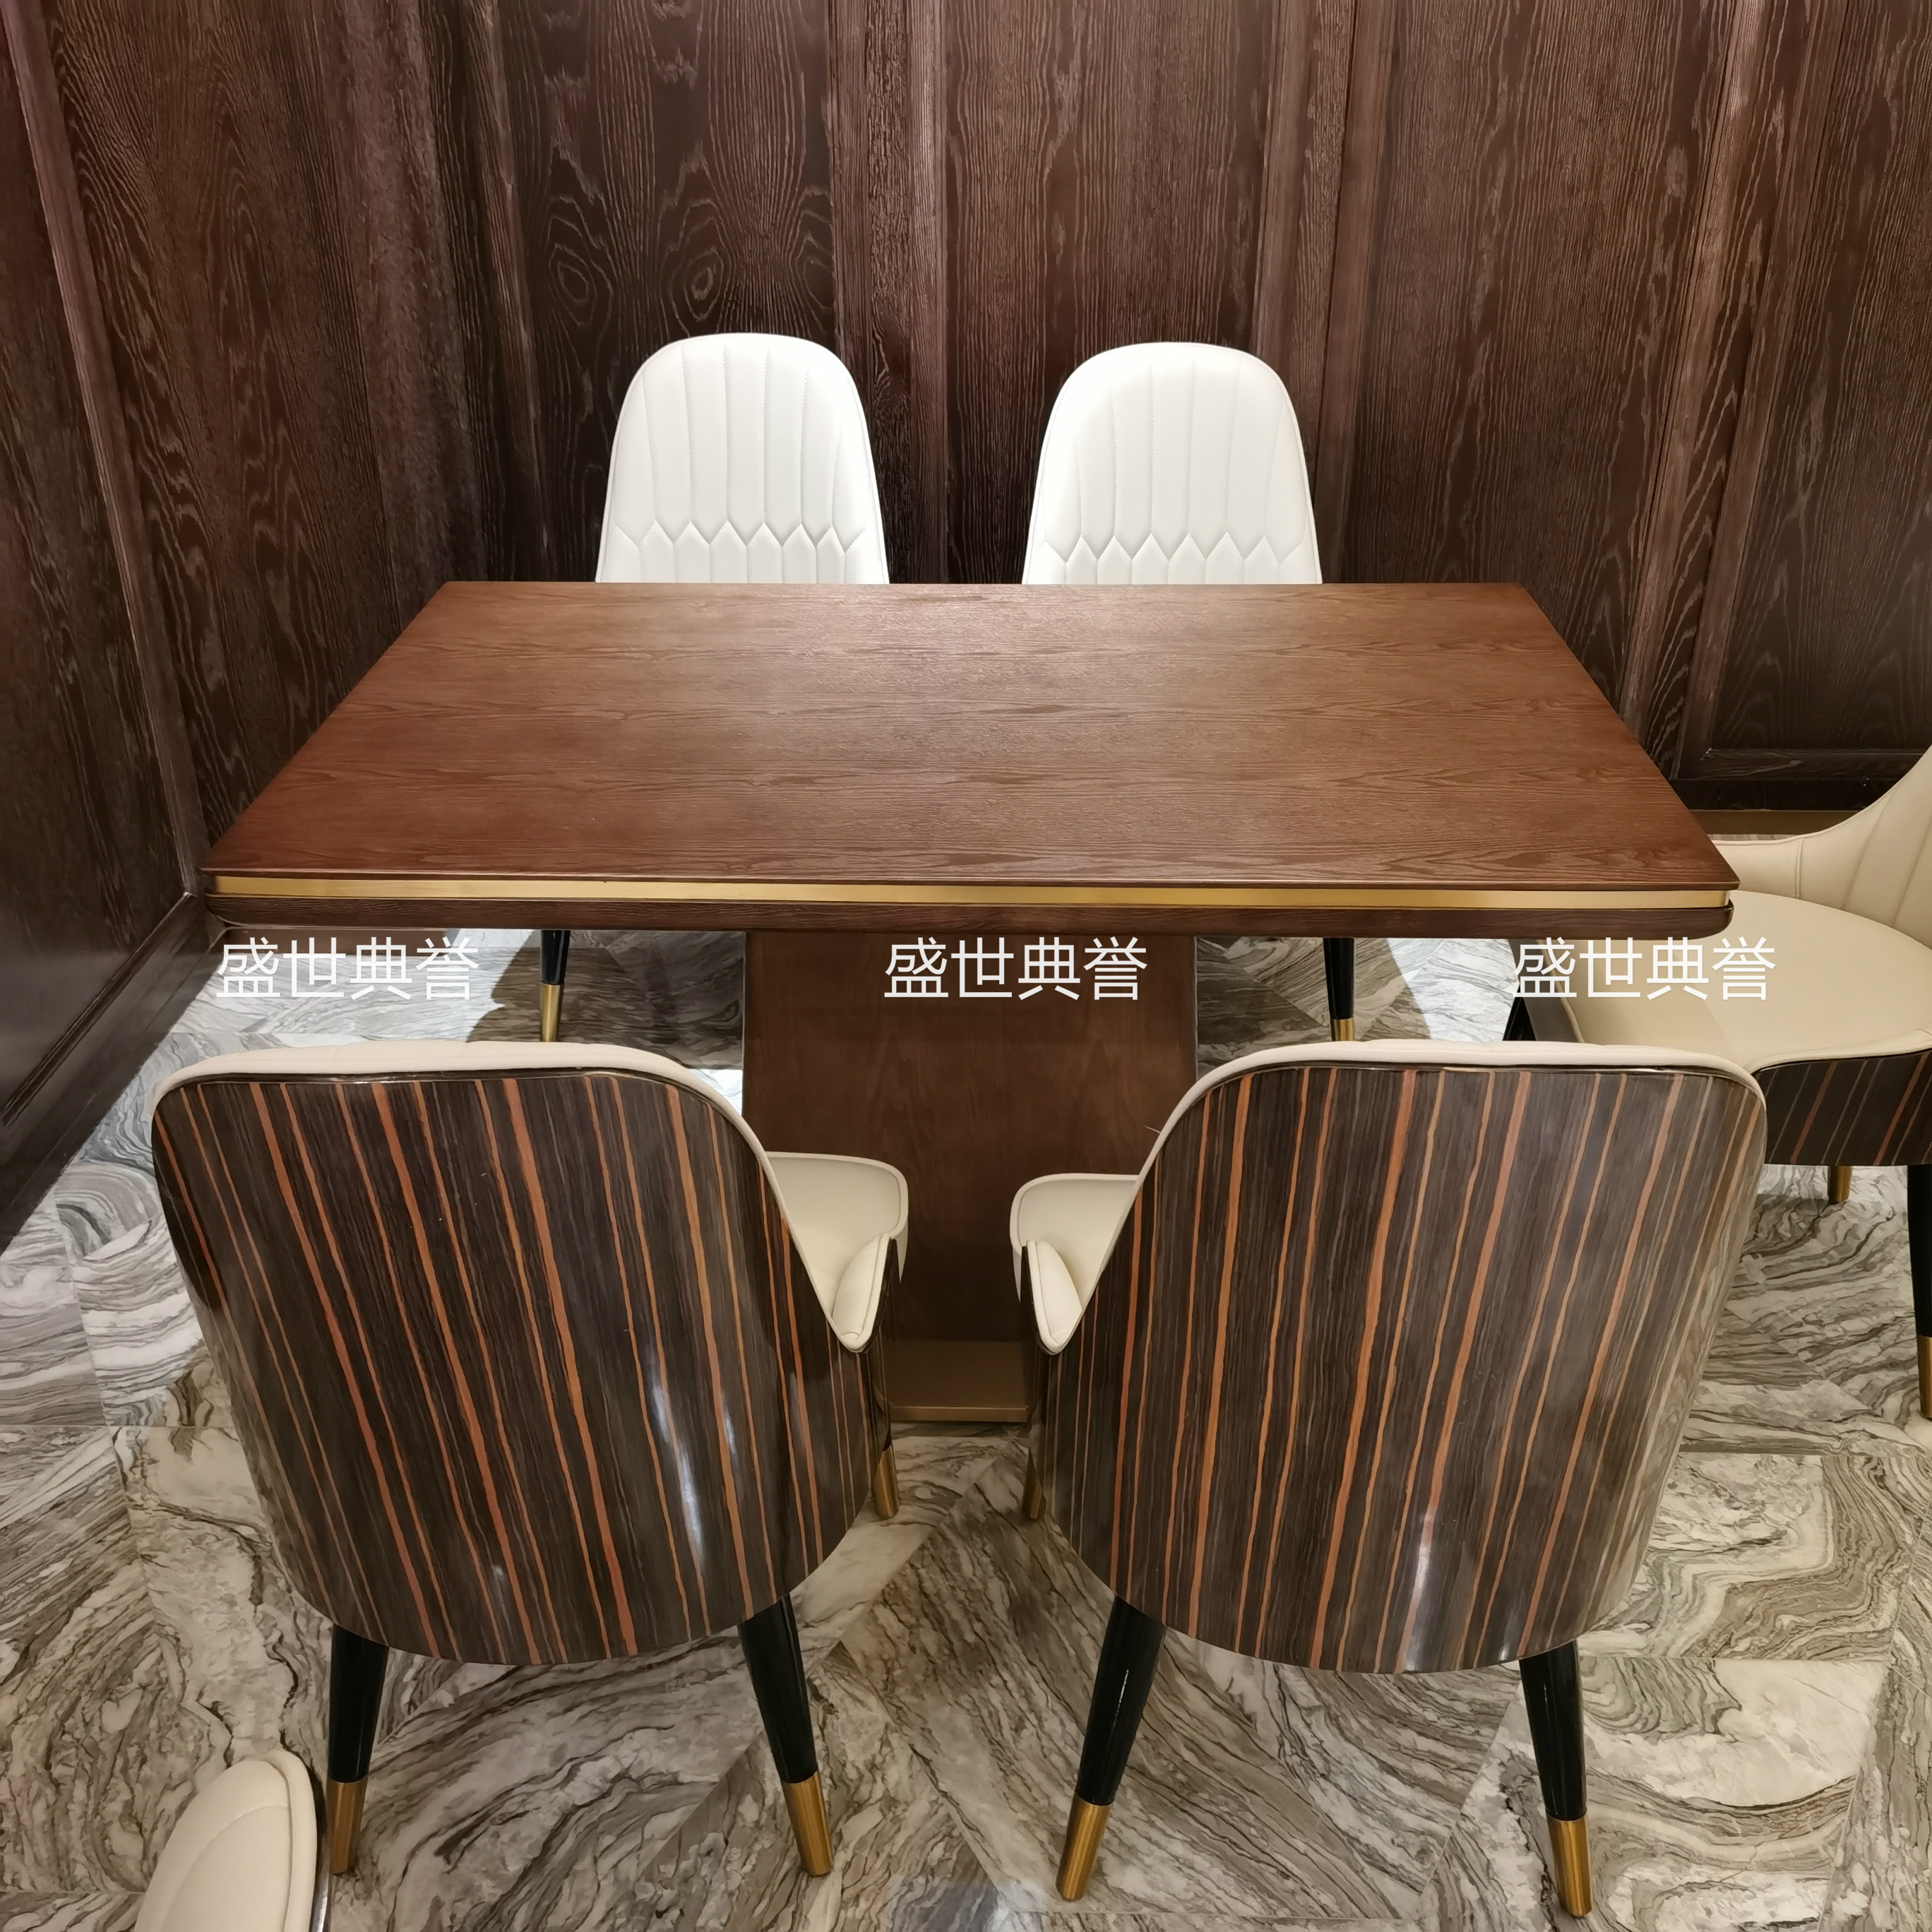 上海度假酒店西餐桌椅海鲜餐厅轻奢实木椅饭店自助餐厅实木餐桌椅详情图1